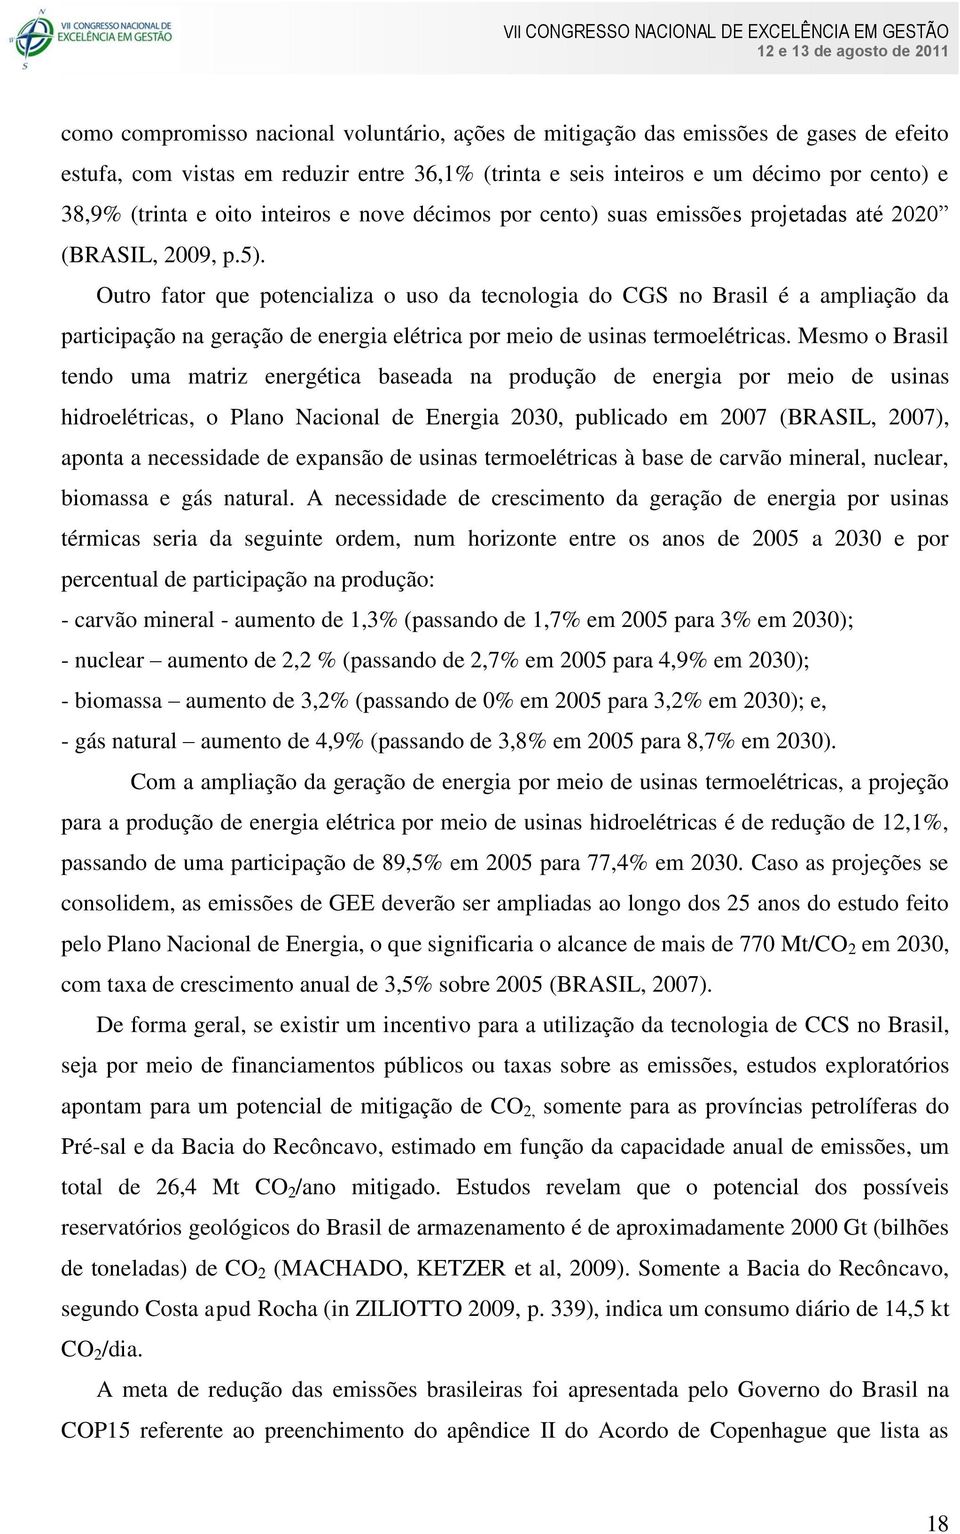 Outro fator que potencializa o uso da tecnologia do CGS no Brasil é a ampliação da participação na geração de energia elétrica por meio de usinas termoelétricas.